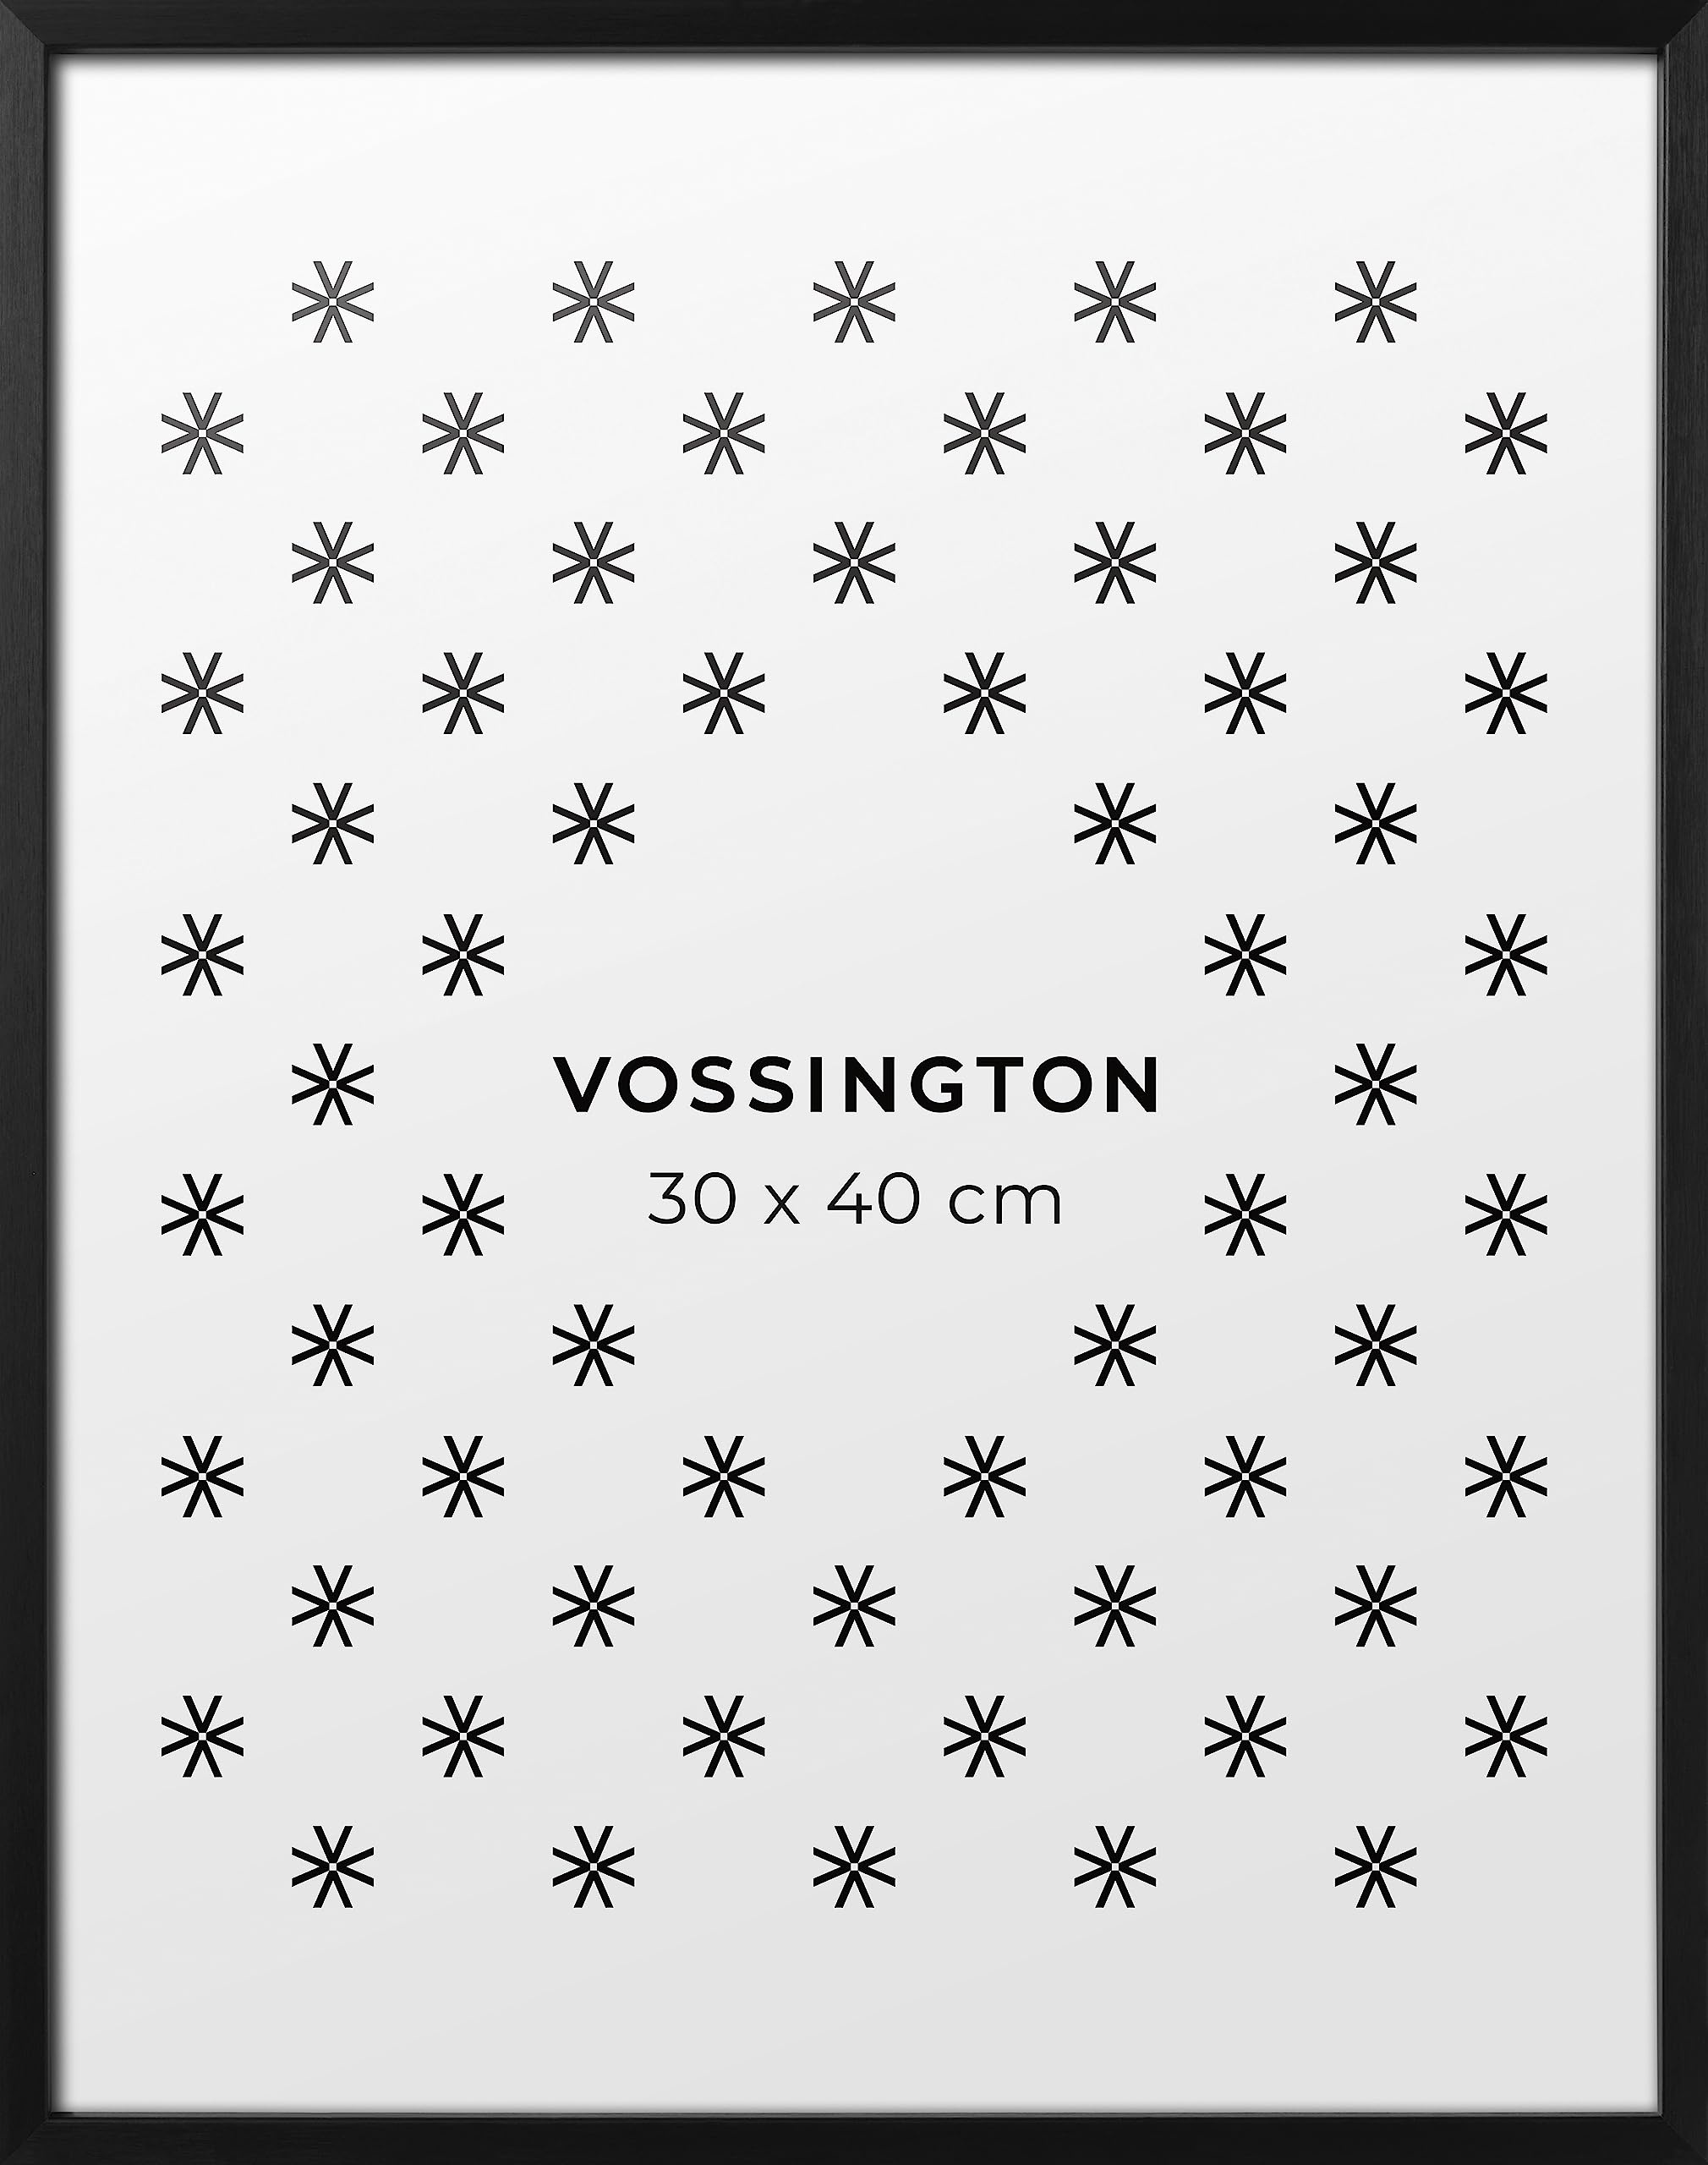 Vossington Bilderrahmen 30x40 Schwarz - Metall - Modernes und schmales Design - Rahmen für 1 Bild, Foto, Poster oder Puzzle im Format 30 x 40 cm (40x30 cm)